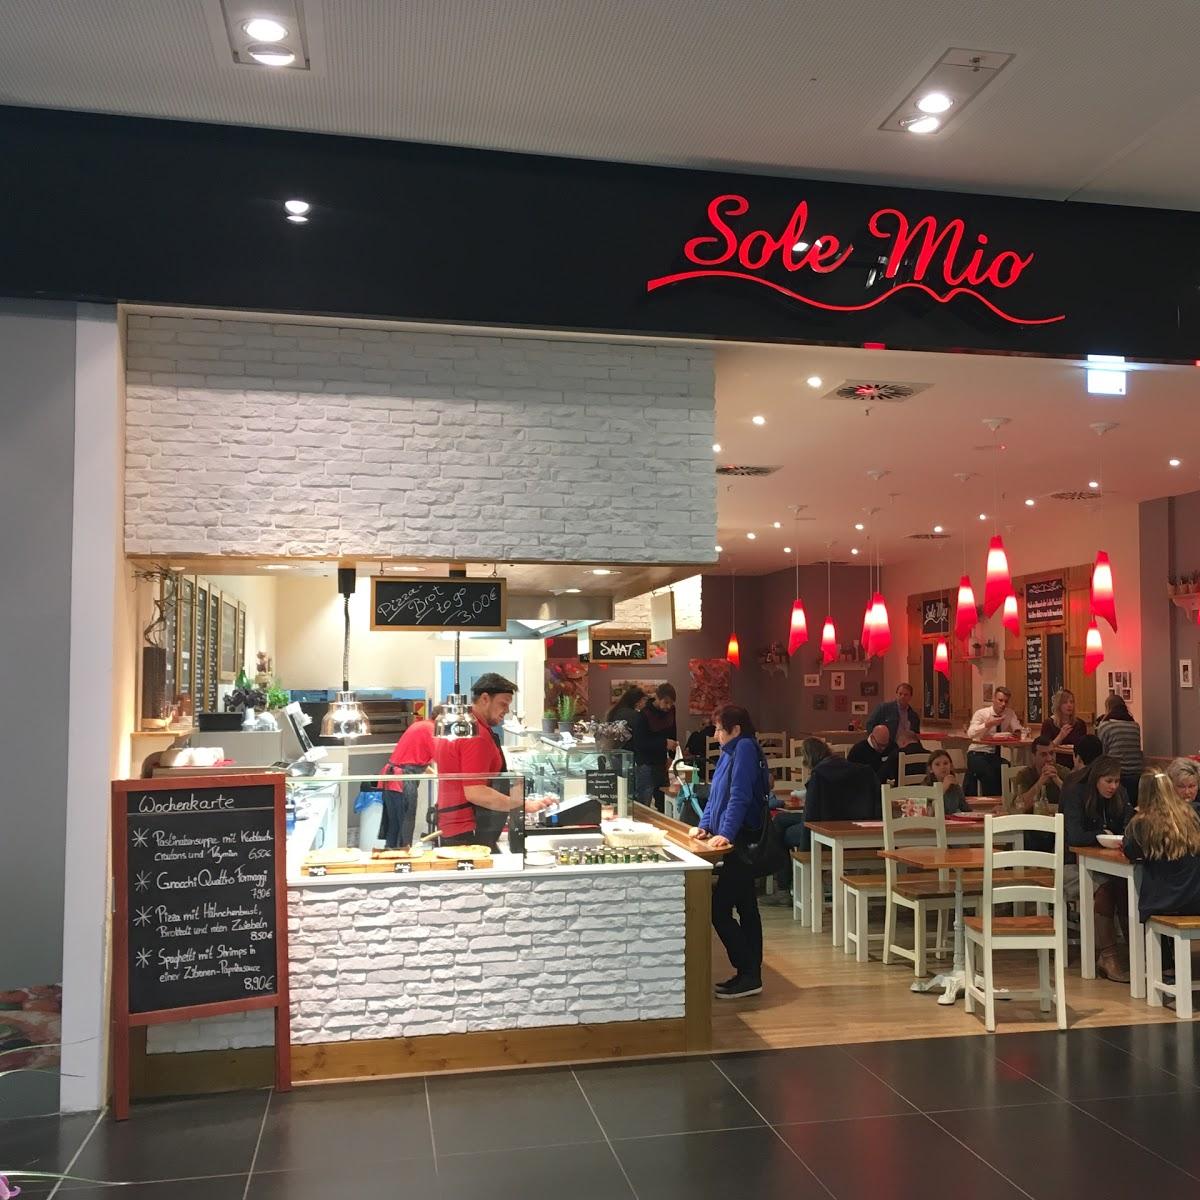 Restaurant "Sole Mio Avanti" in Leipzig